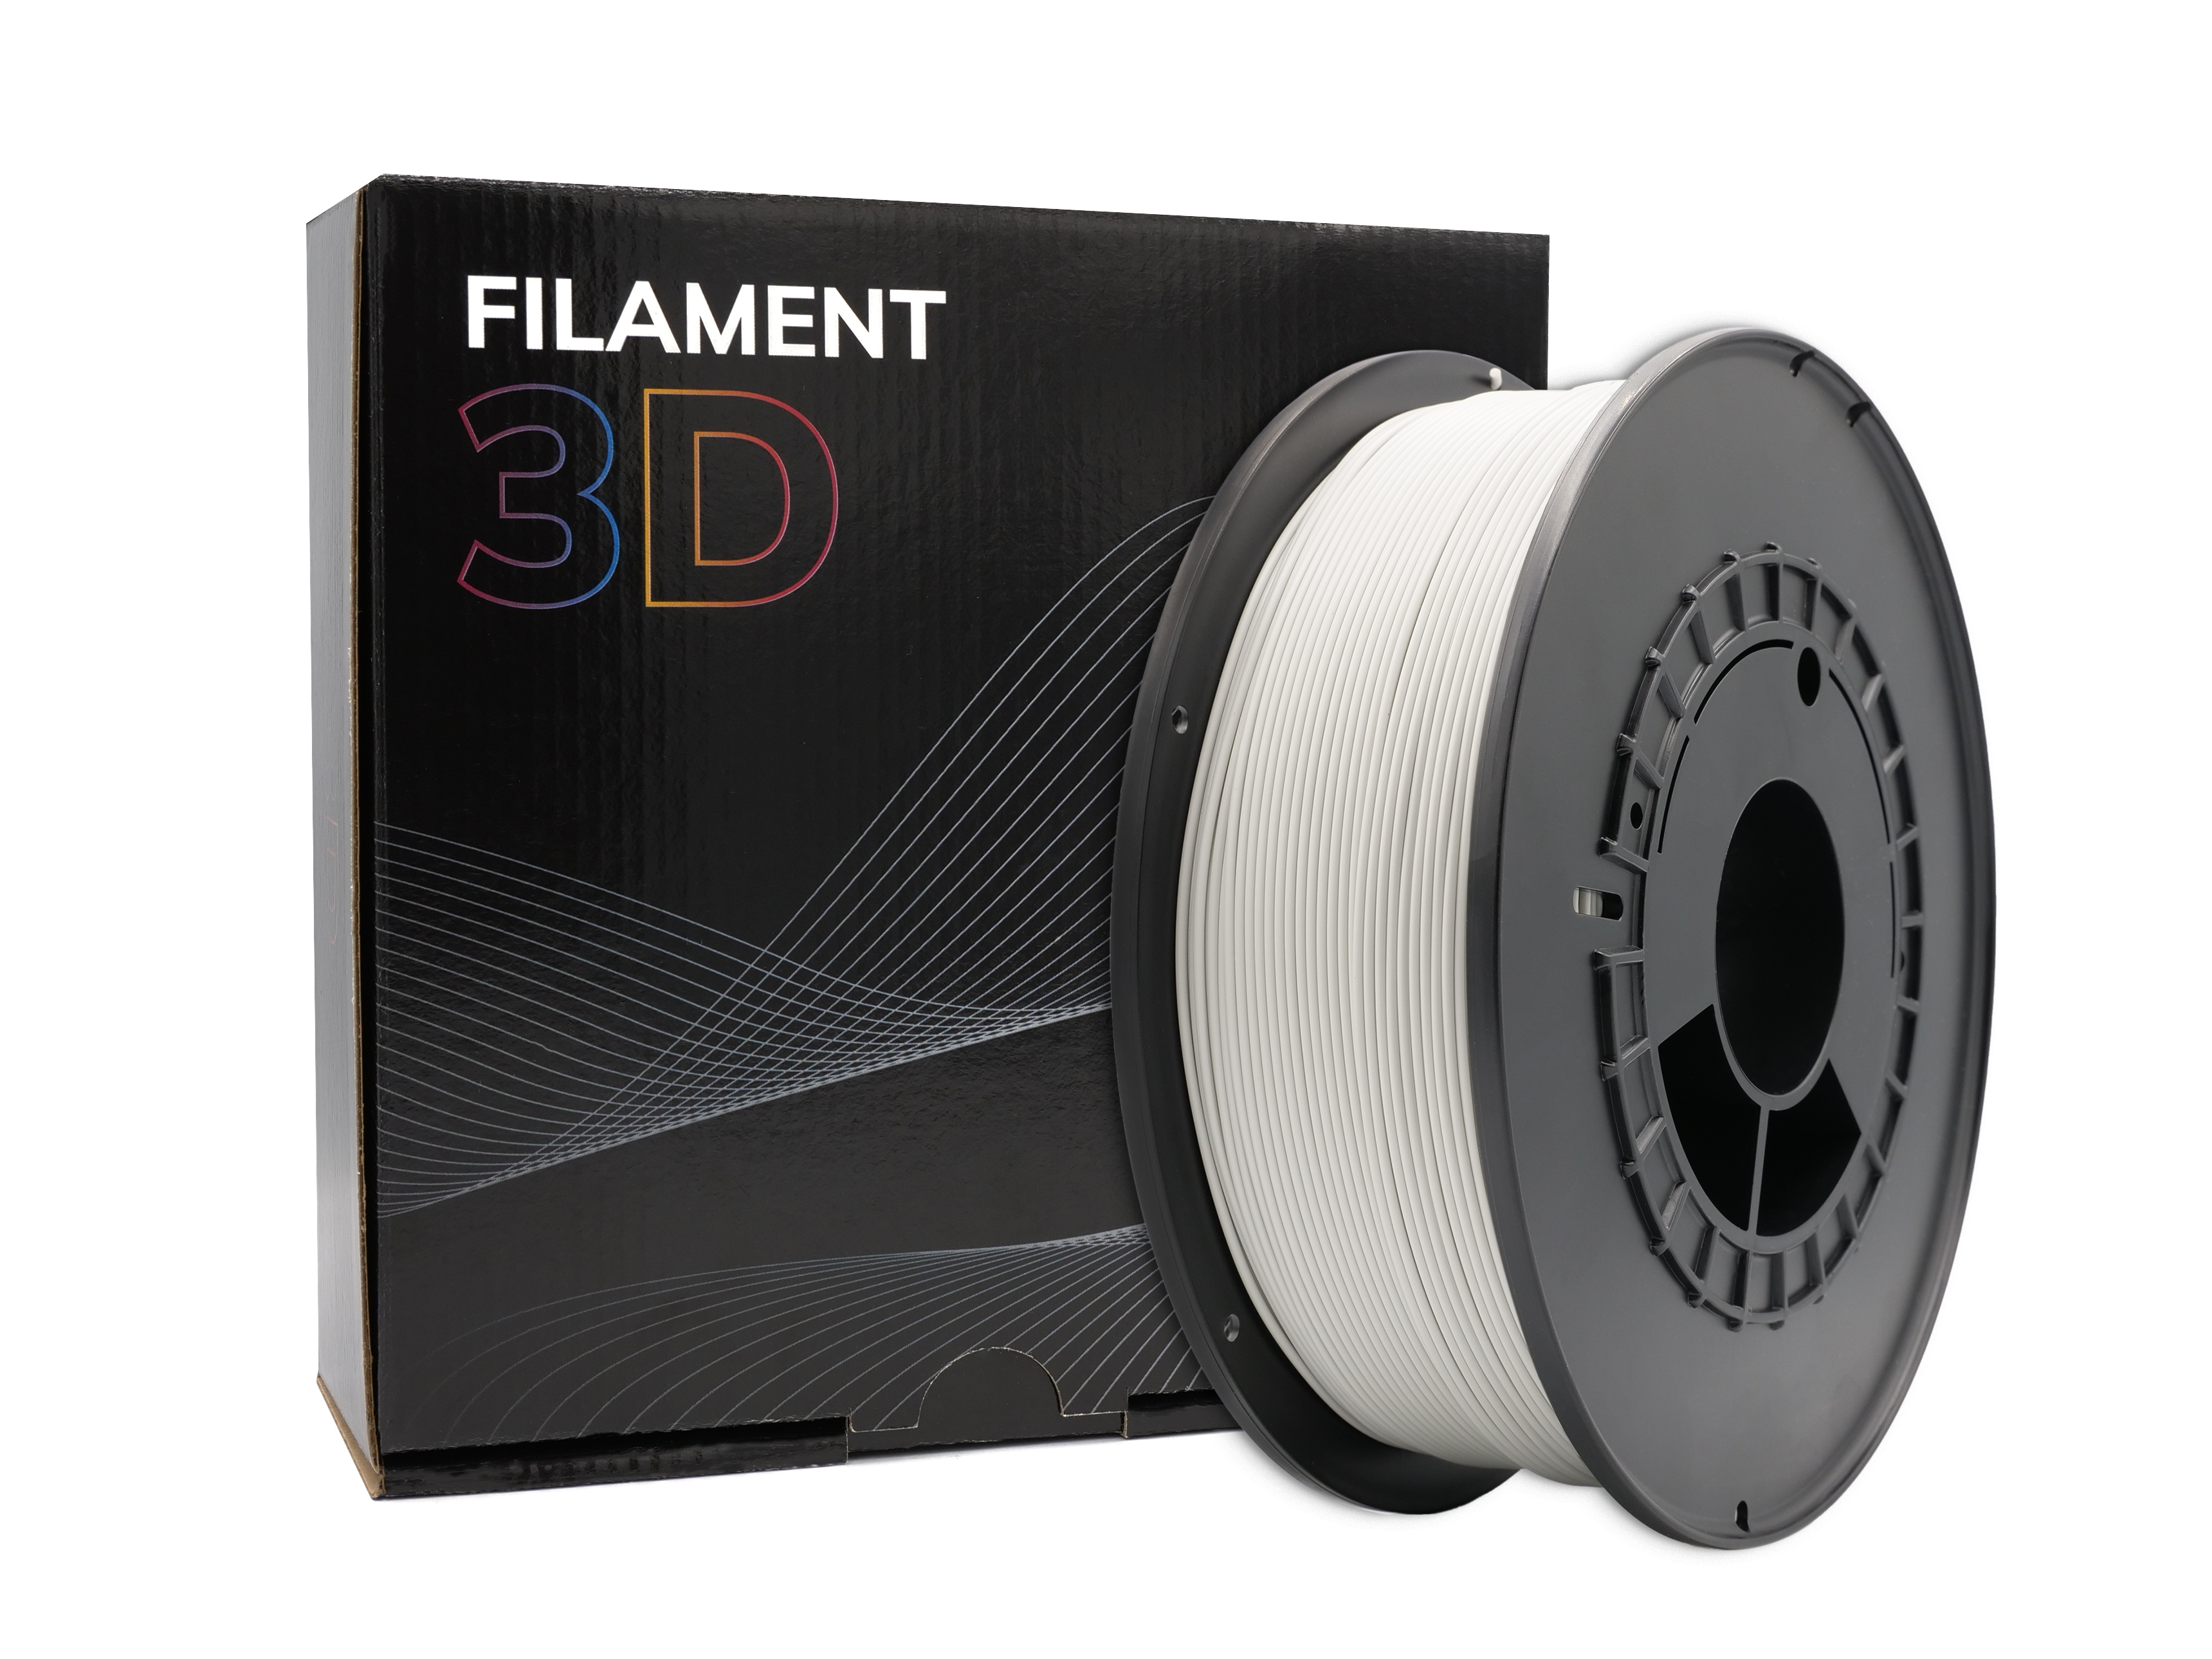 Filament PLA 3D - Diamètre 1.75mm - Bobine 1kg - Couleur Gris Clair